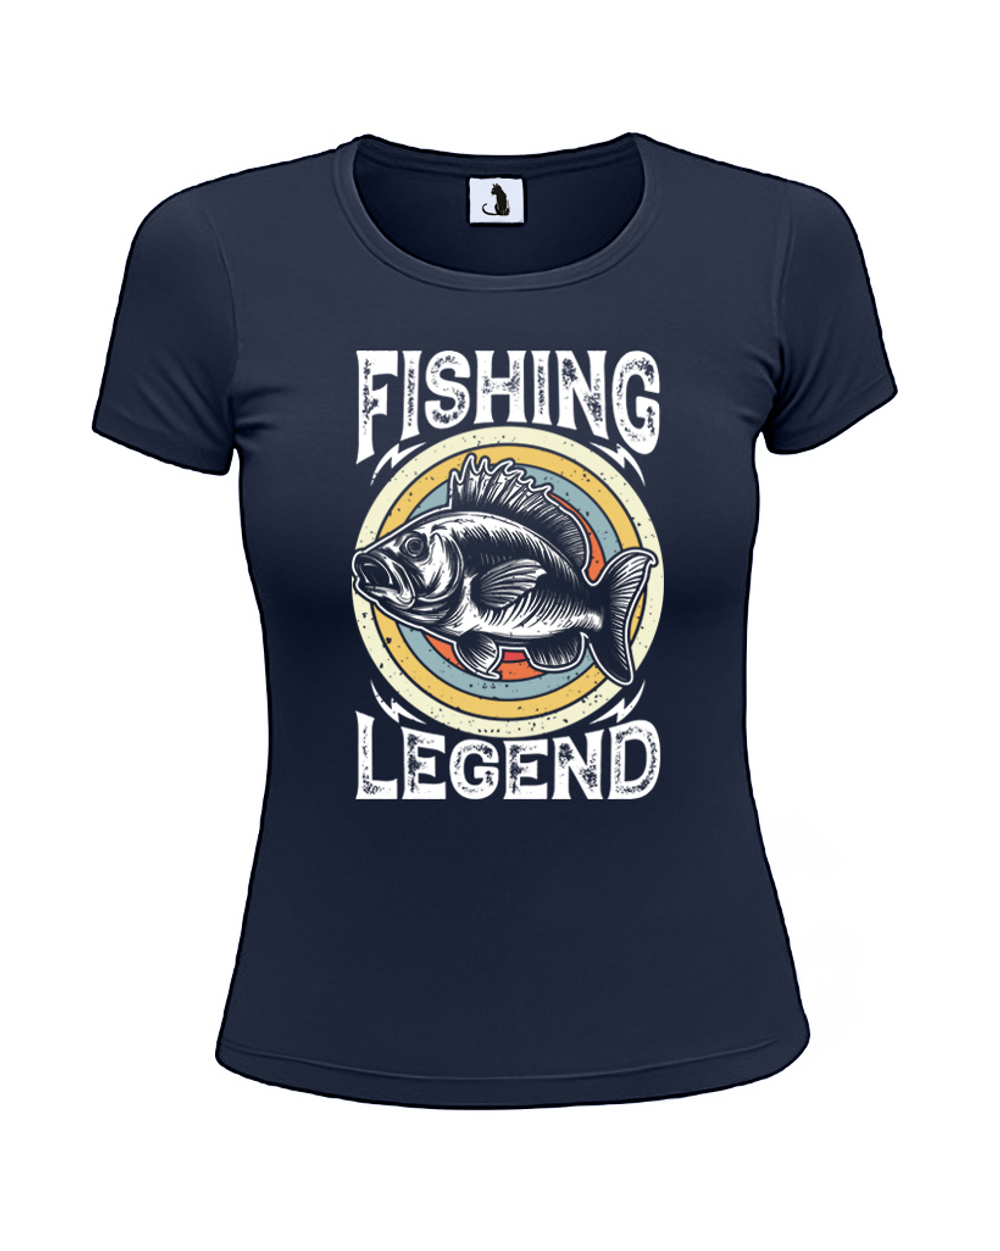 Футболка рыбака Fishing Legend женская приталенная темно-синяя